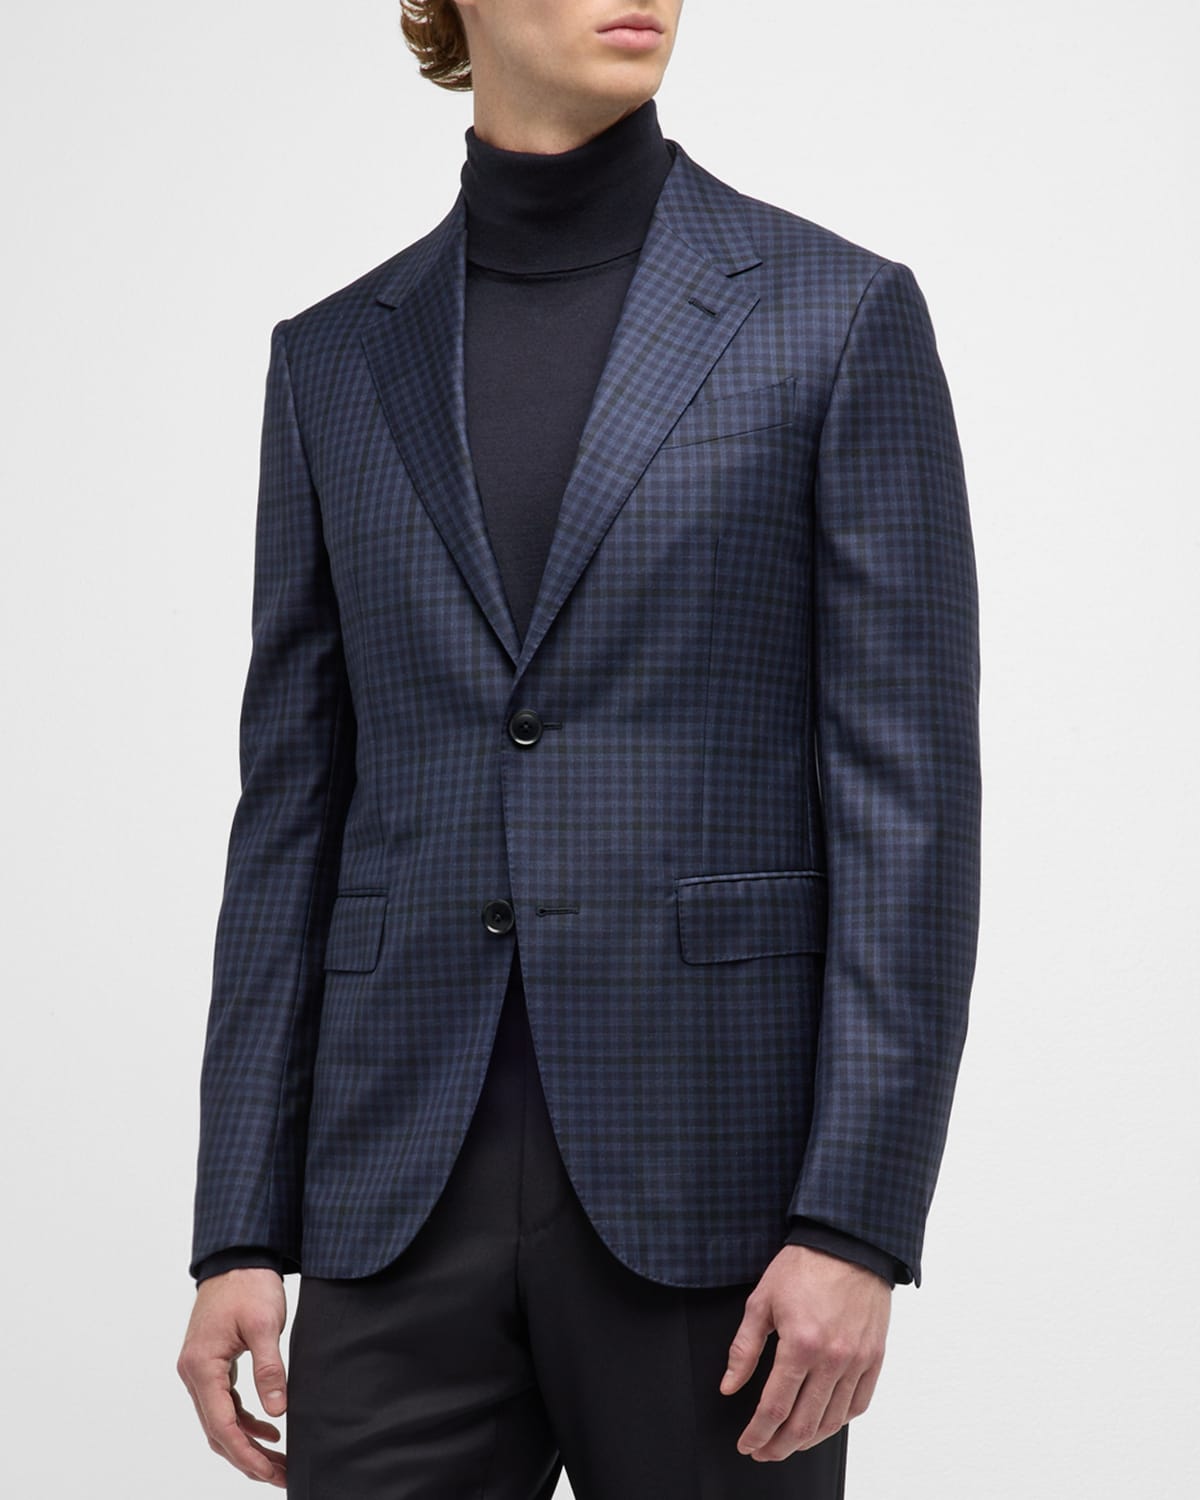 ZEGNA Men's Check Wool Sport Coat | Neiman Marcus